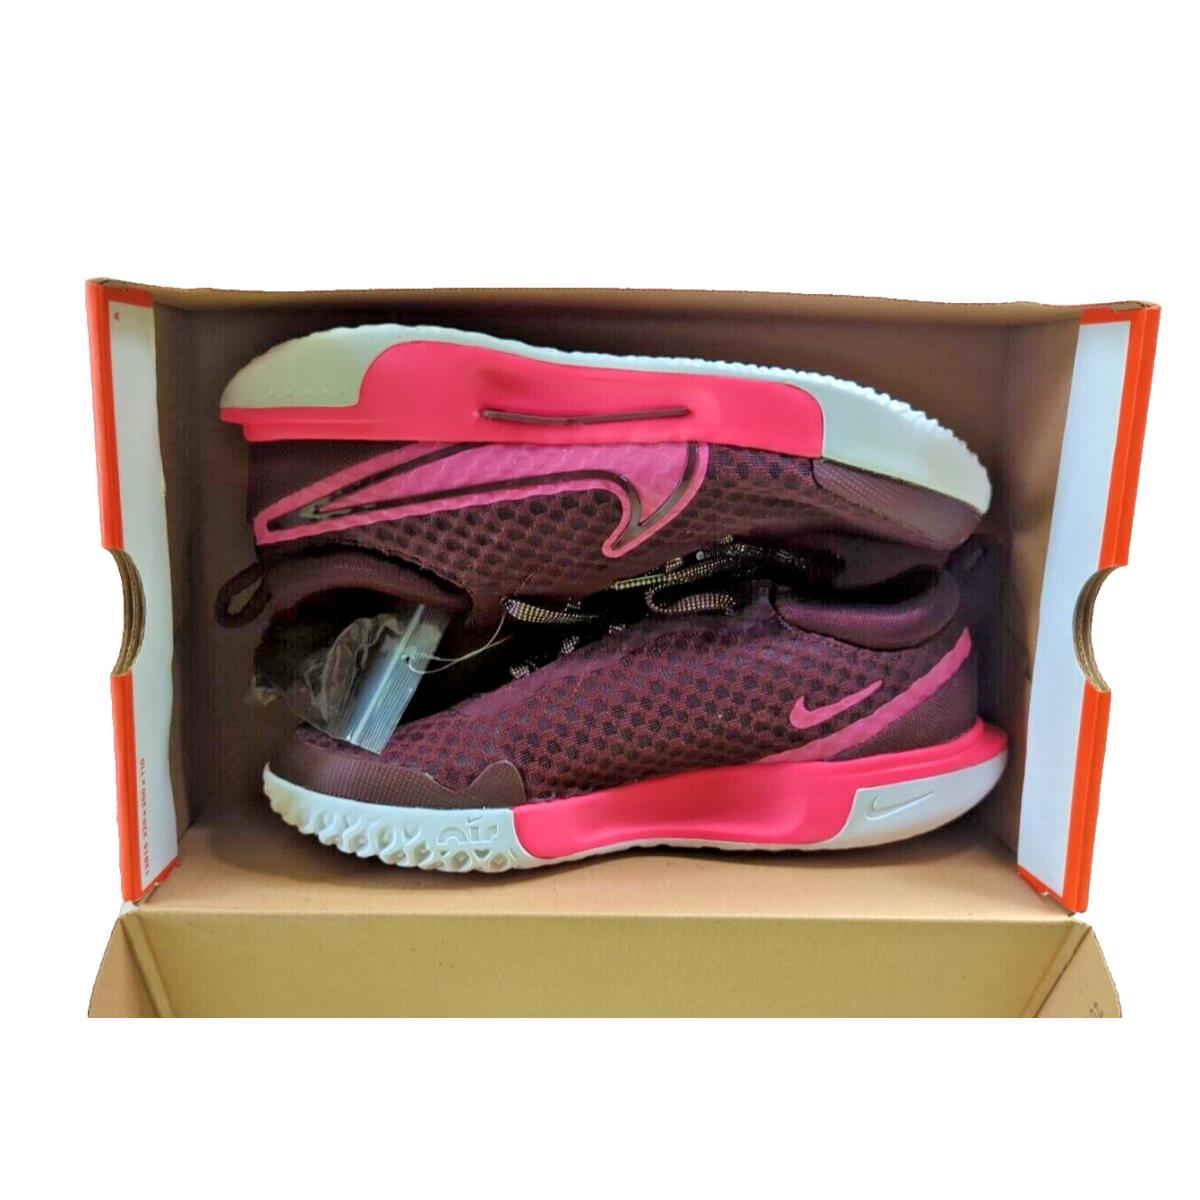 Nike Court Zoom Pro HC Prm Premium Burgundy Tennis Shoes Women`s Size 8